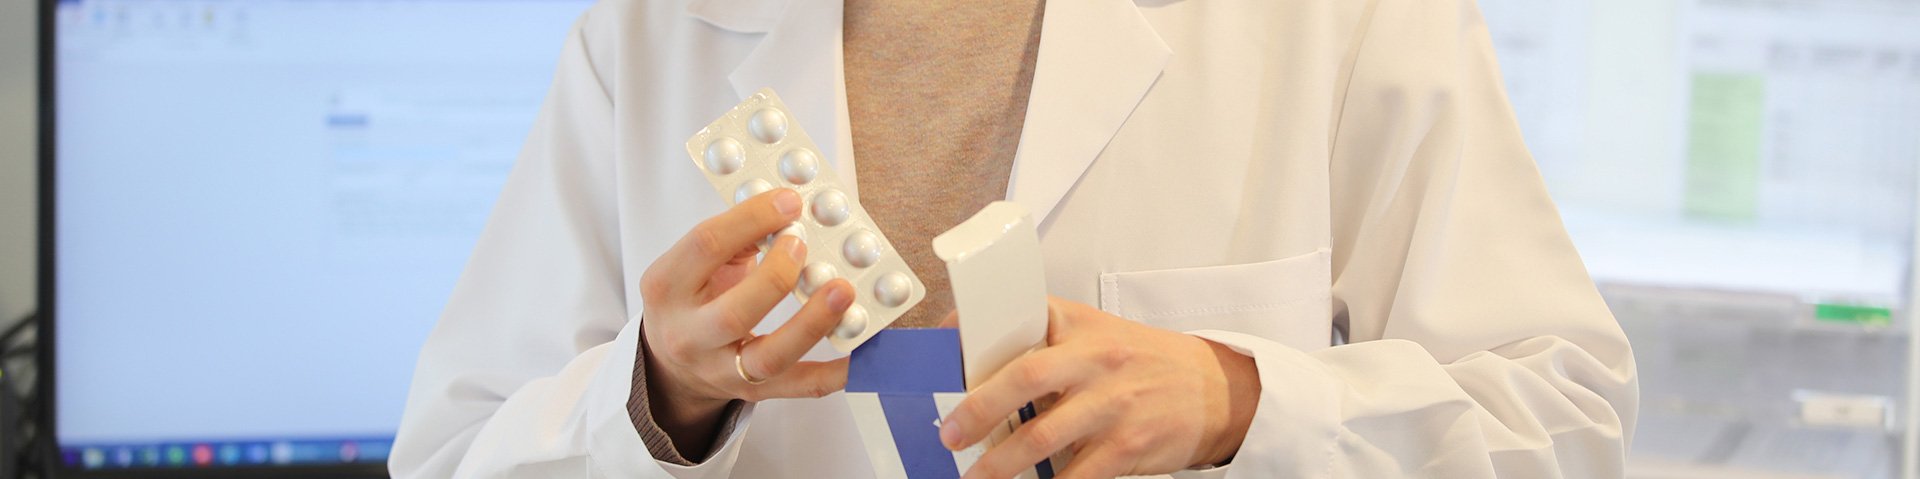 Ein Apotheker mit weißem Kittel entpackt eine Medikamentenschachtel und holt die verplisterten Tabletten heraus. Im Hintergrund sieht man einen Bildschirm.